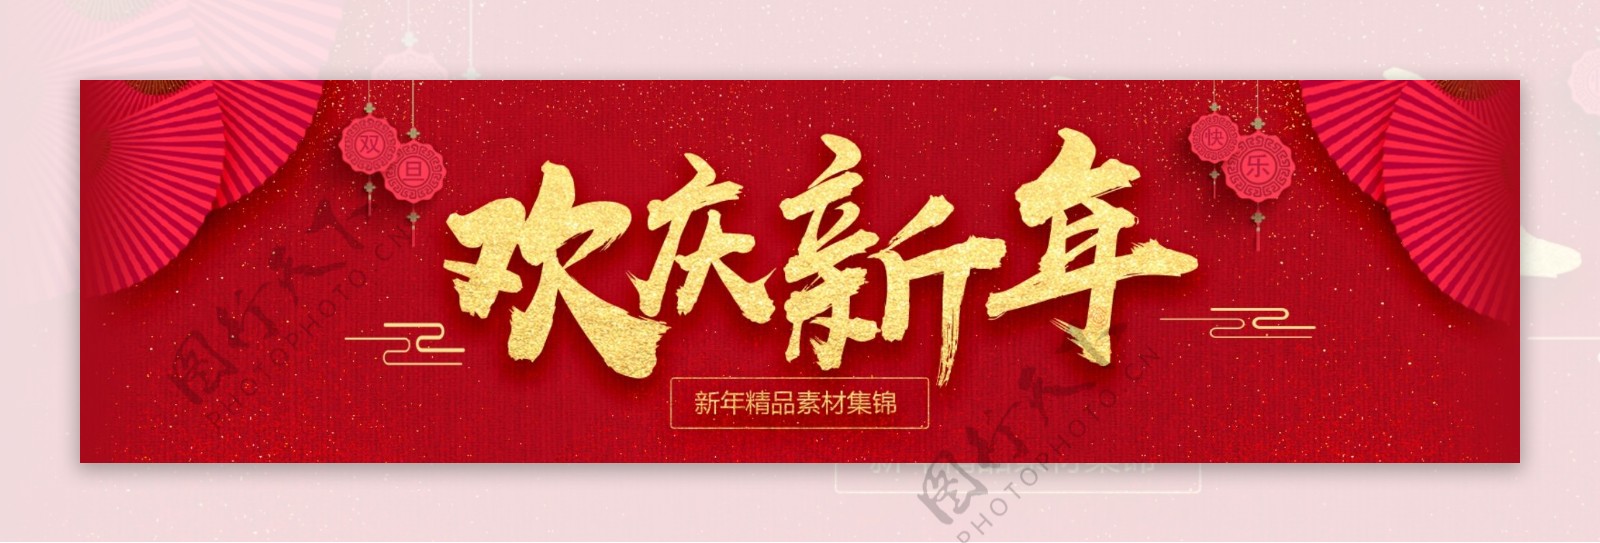 红色喜庆新年元旦商业促销海报设计